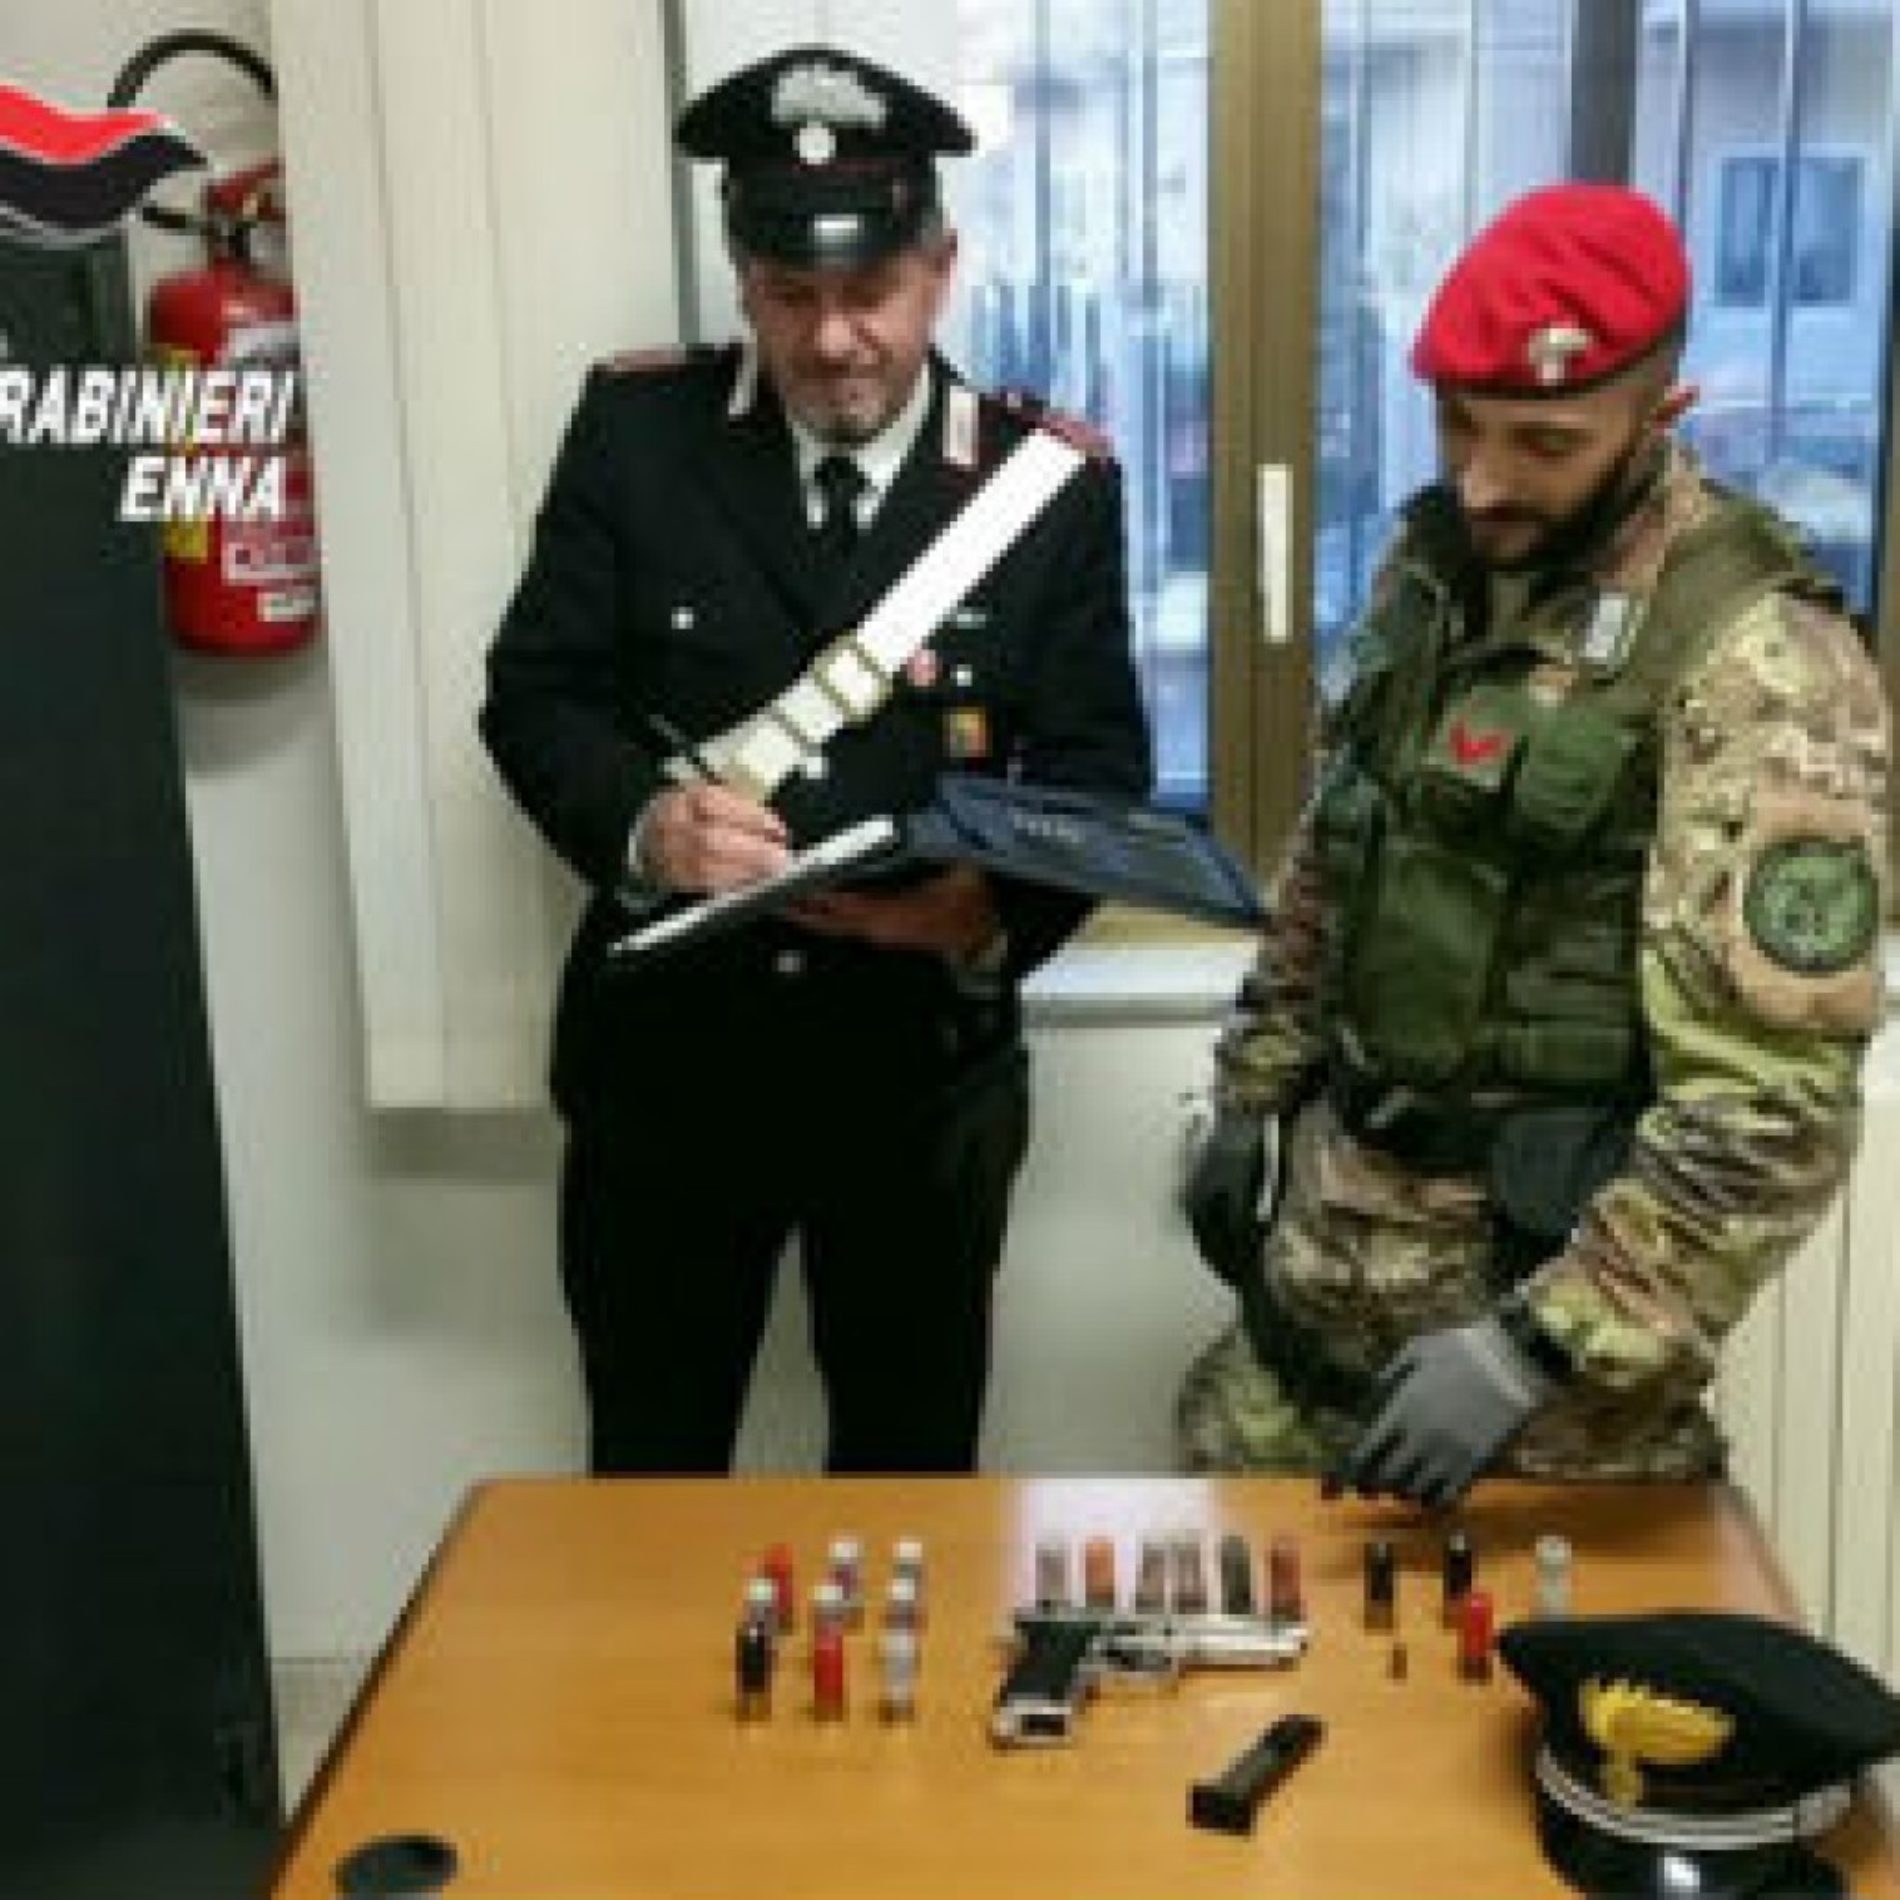 CERAMI / TROINA. Servizio di controllo del territorio. I carabinieri sequestrano armi e droga. Denunciate quattro persone